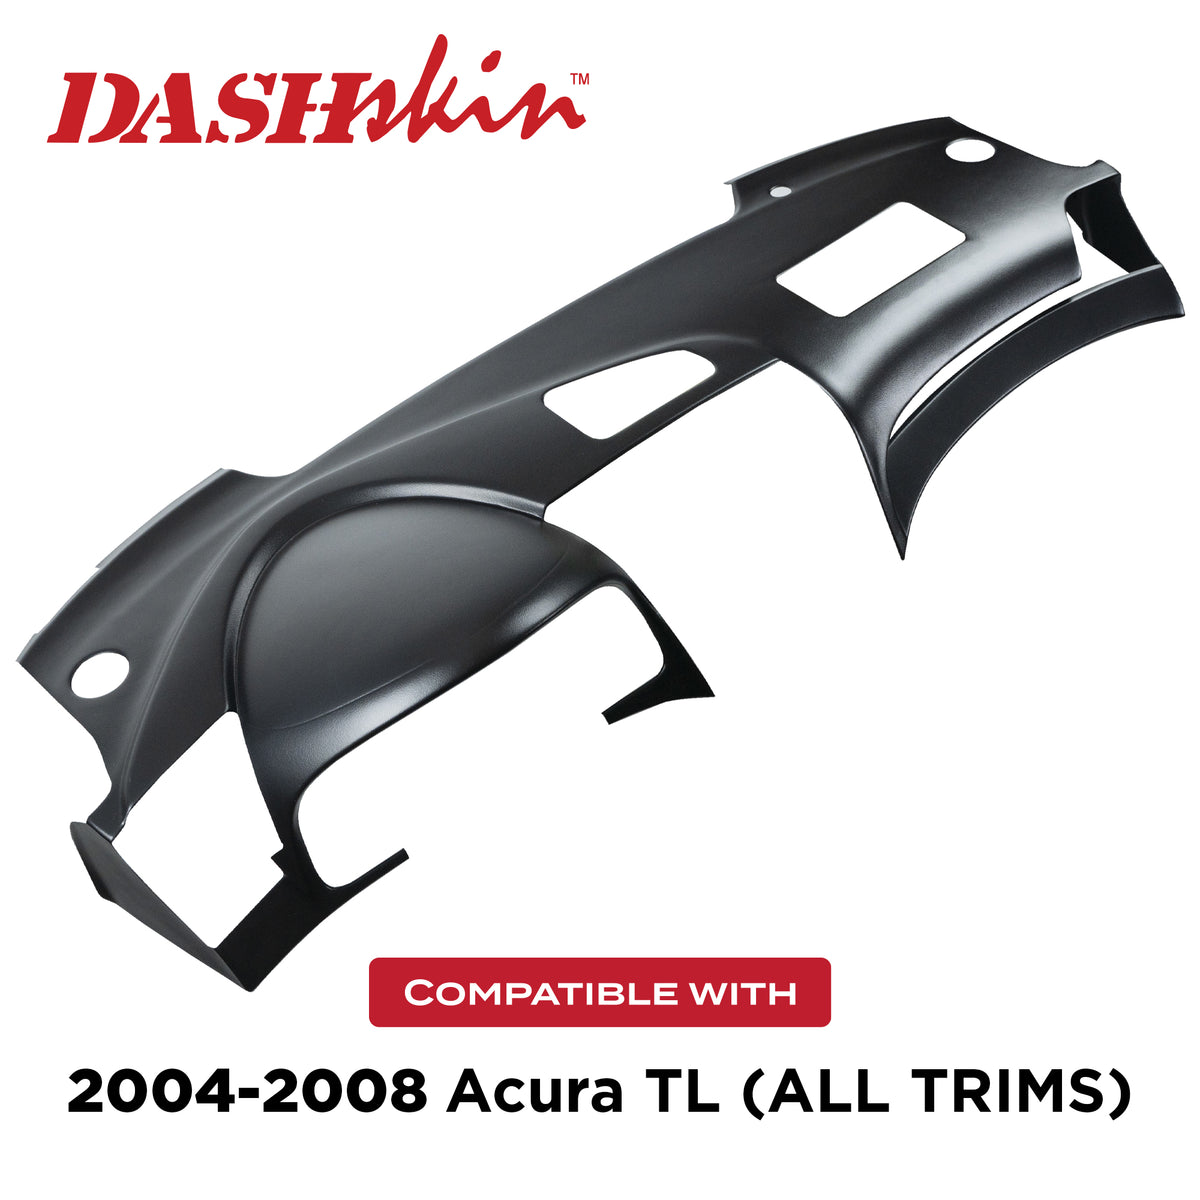 2004-2008 Acura TL Dash Cover - DashSkin